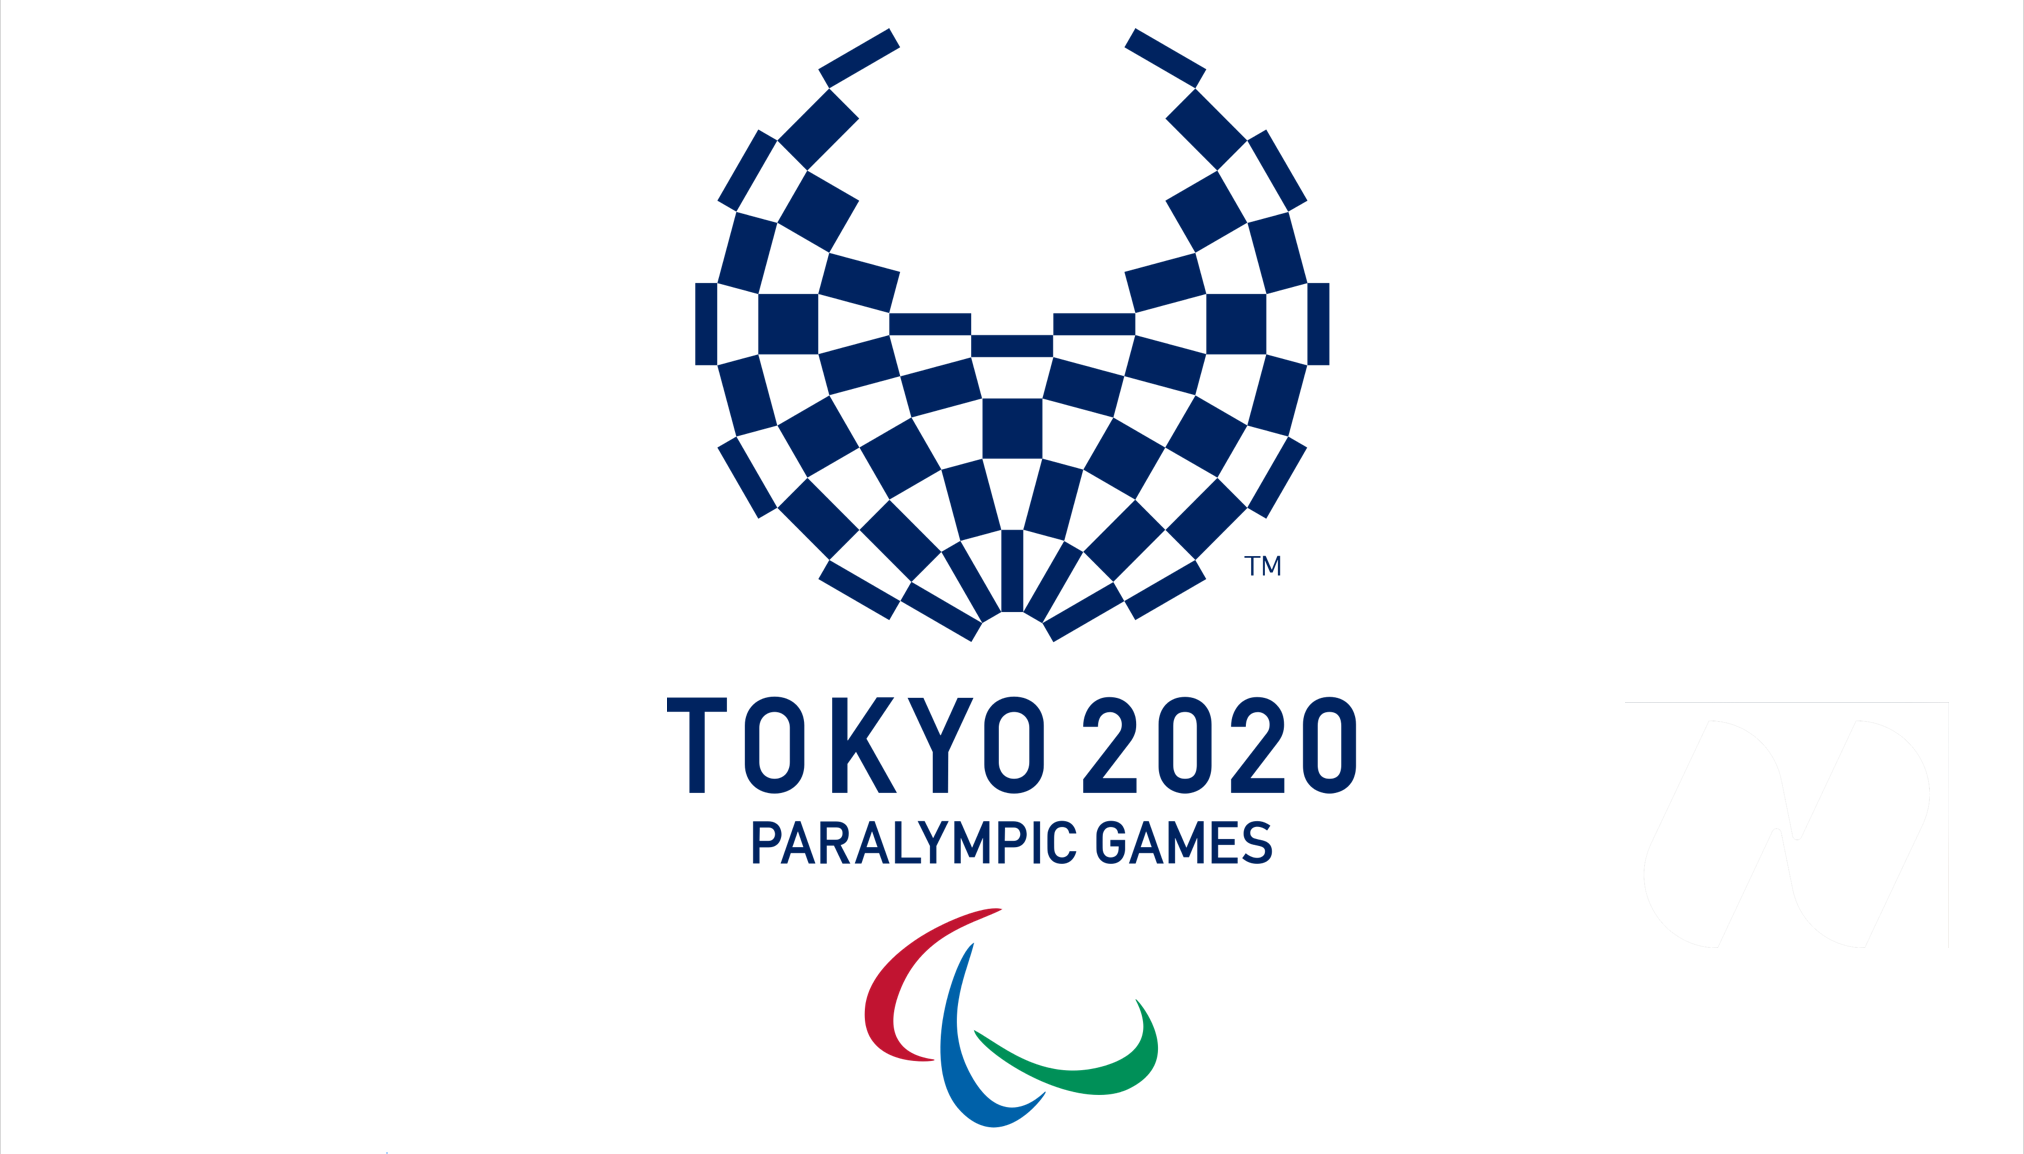 Fiamma multicolore per le Paralimpiadi 2020